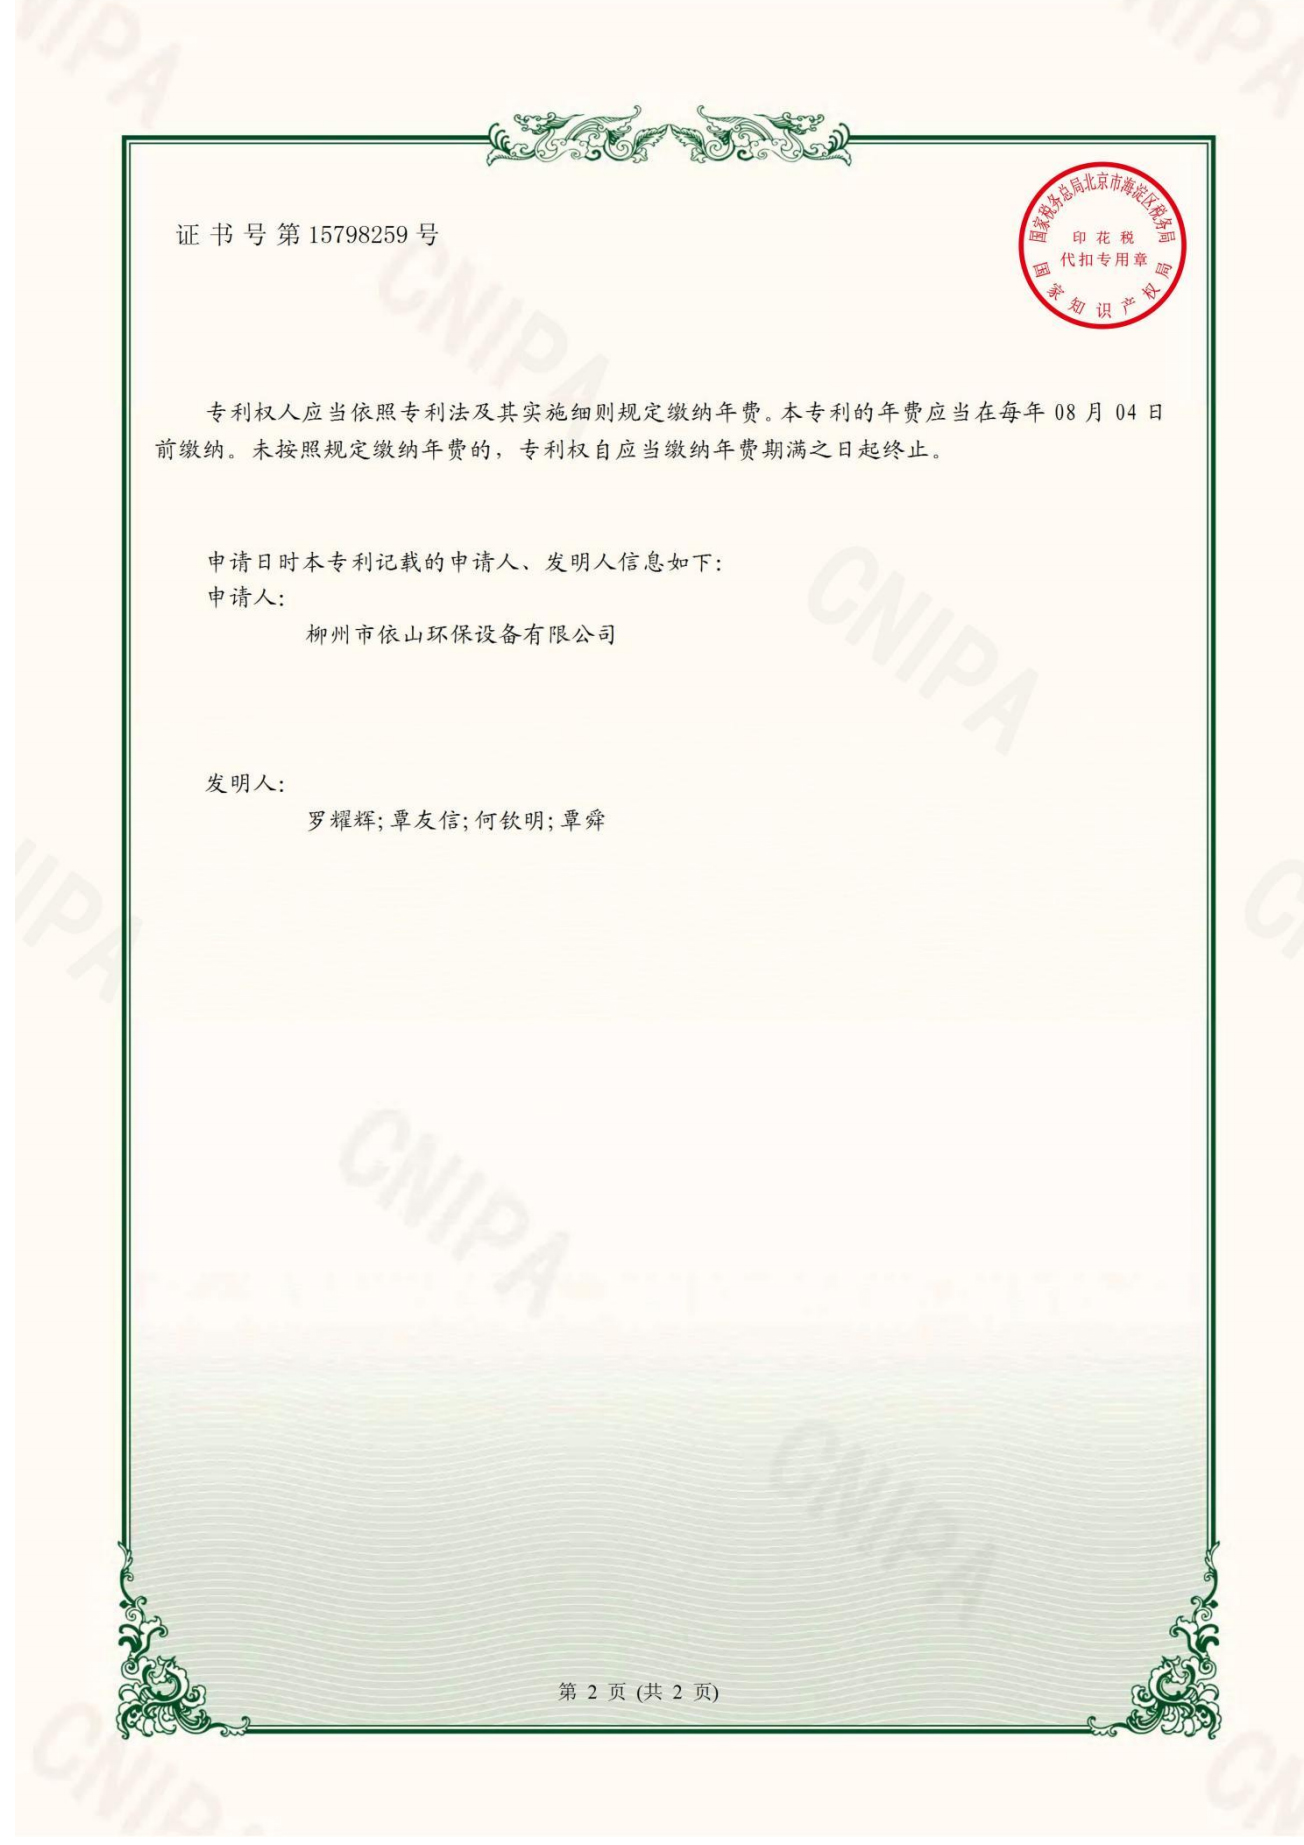 柳州市依山环保设备有限公司资质文件_13.jpg